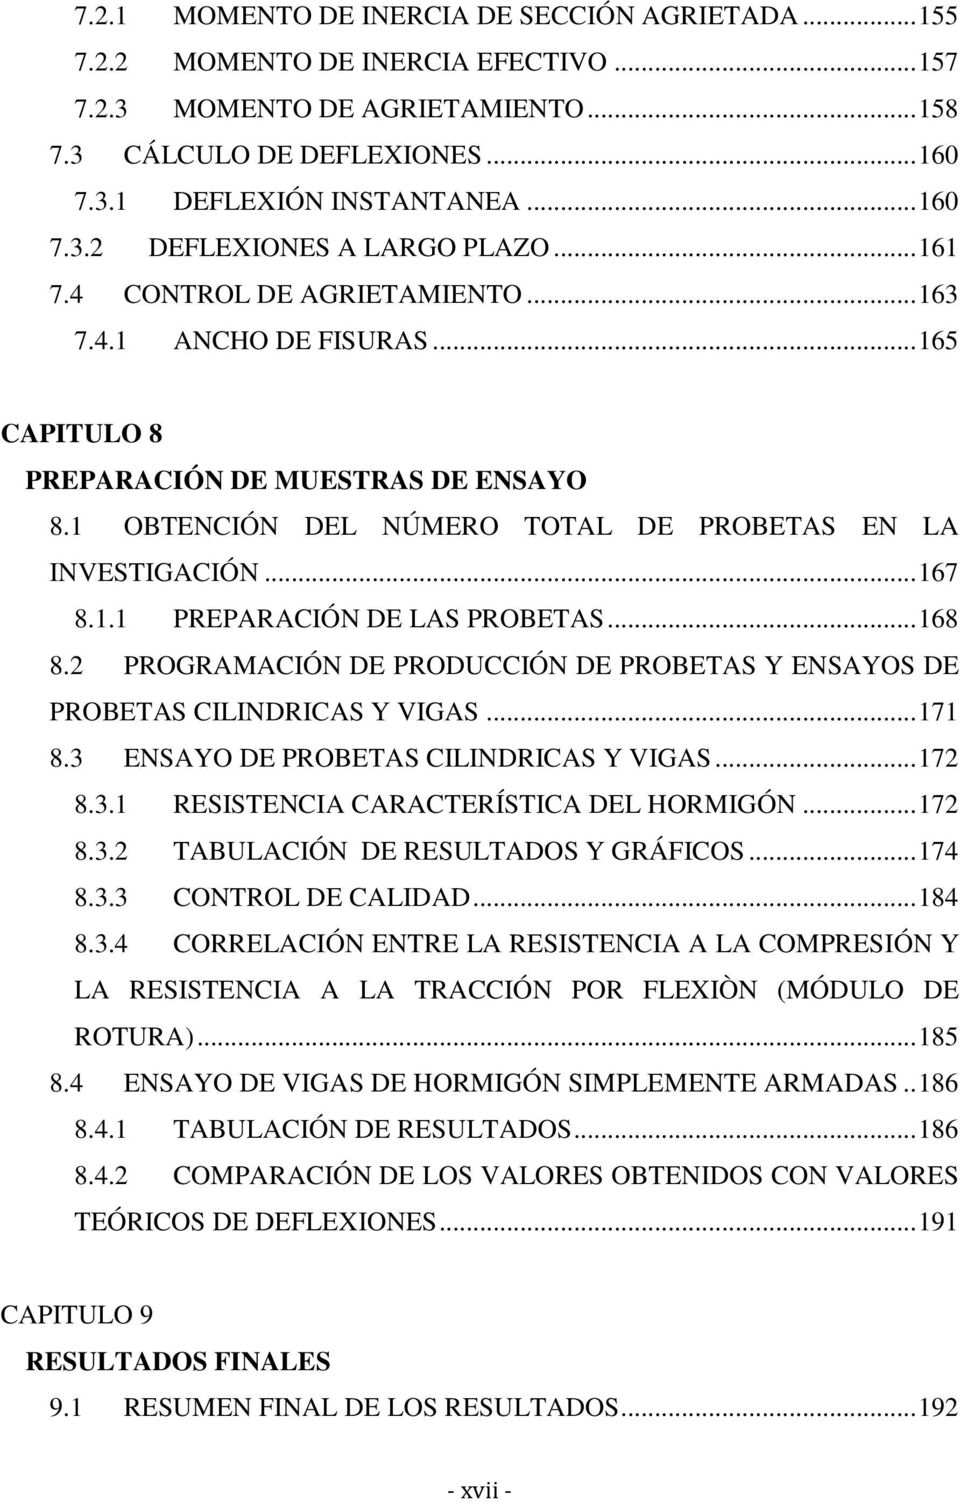 1 OBTENCIÓN DEL NÚMERO TOTAL DE PROBETAS EN LA INVESTIGACIÓN... 167 8.1.1 PREPARACIÓN DE LAS PROBETAS... 168 8.2 PROGRAMACIÓN DE PRODUCCIÓN DE PROBETAS Y ENSAYOS DE PROBETAS CILINDRICAS Y VIGAS.